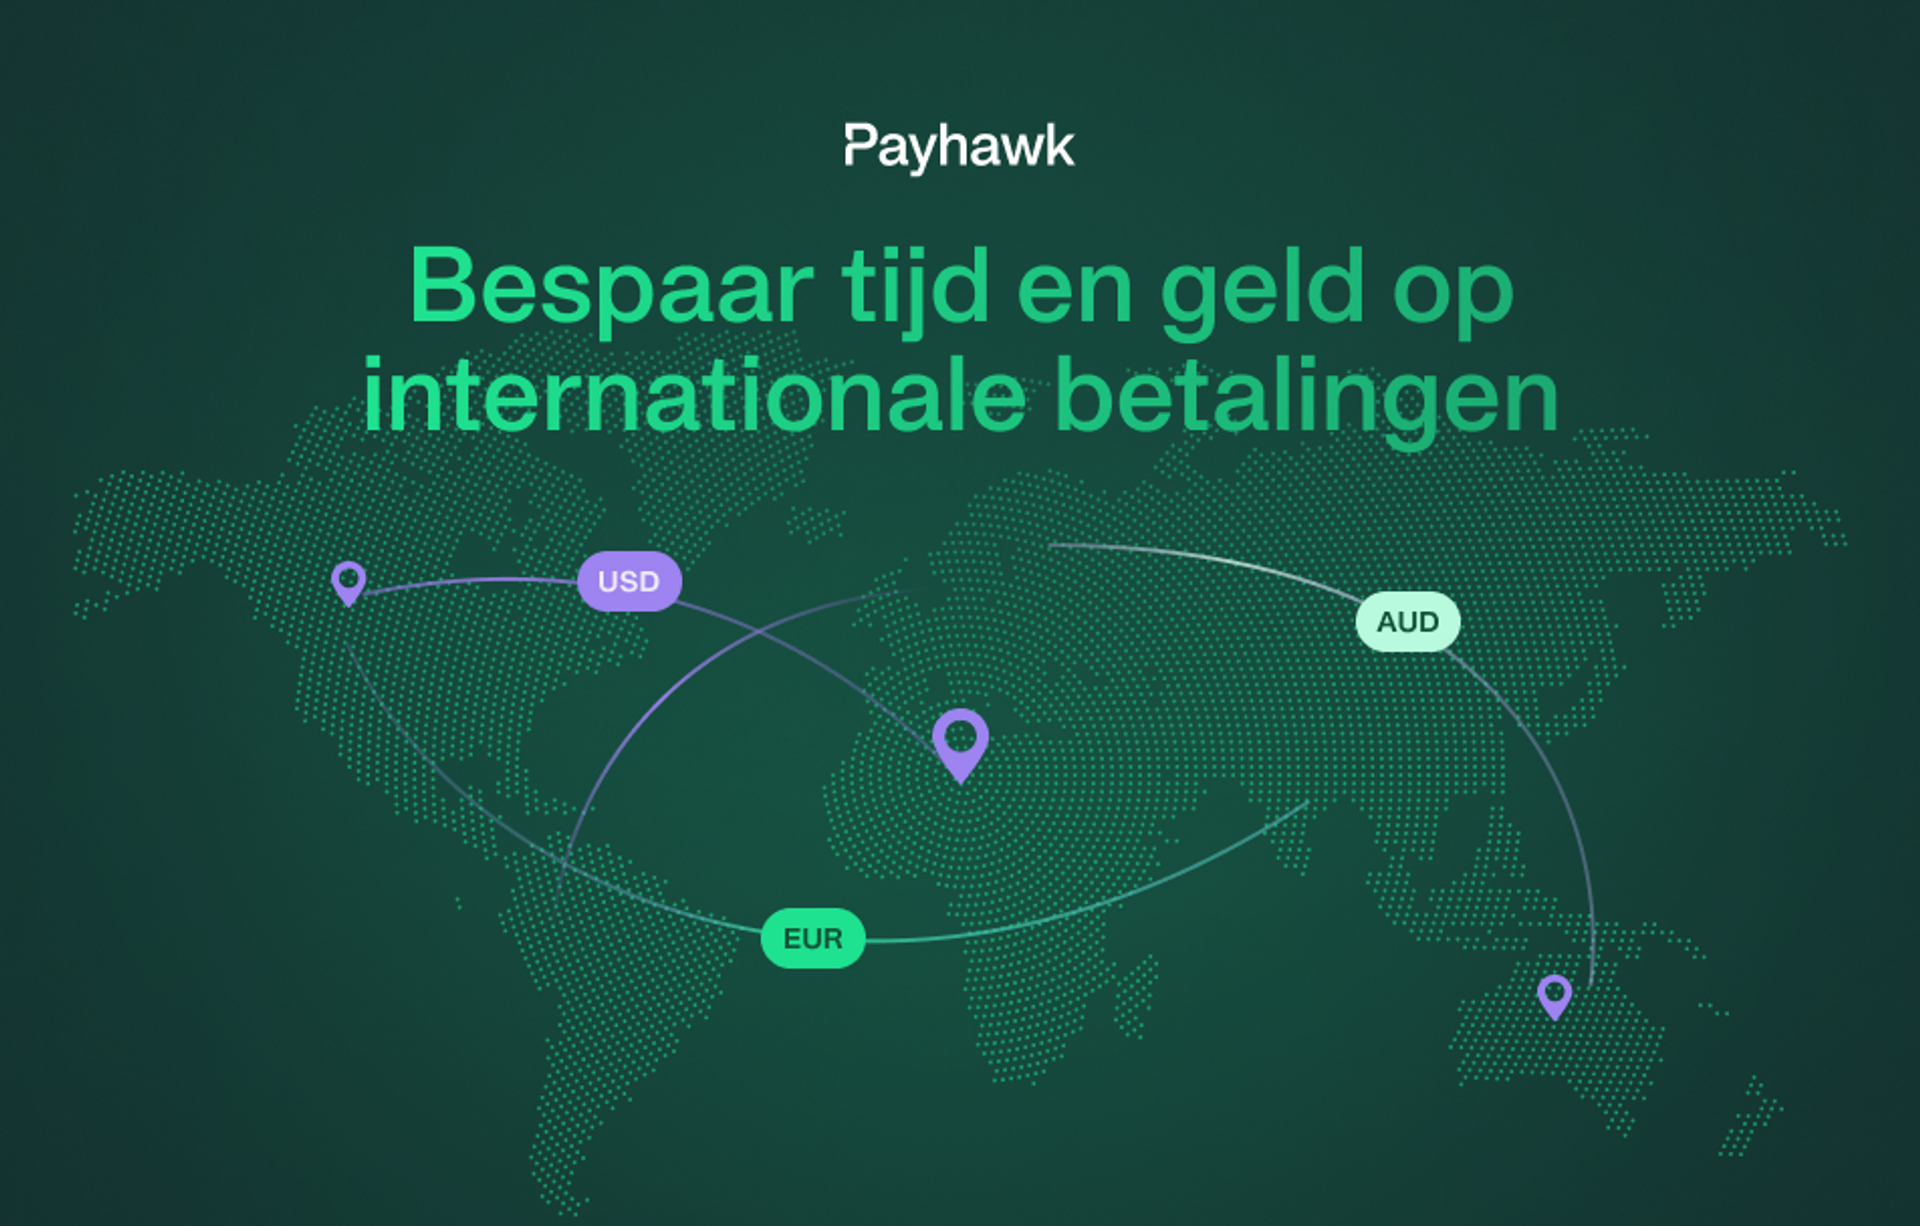 Payhawk lanceert internationale betalingen met Wise Platform